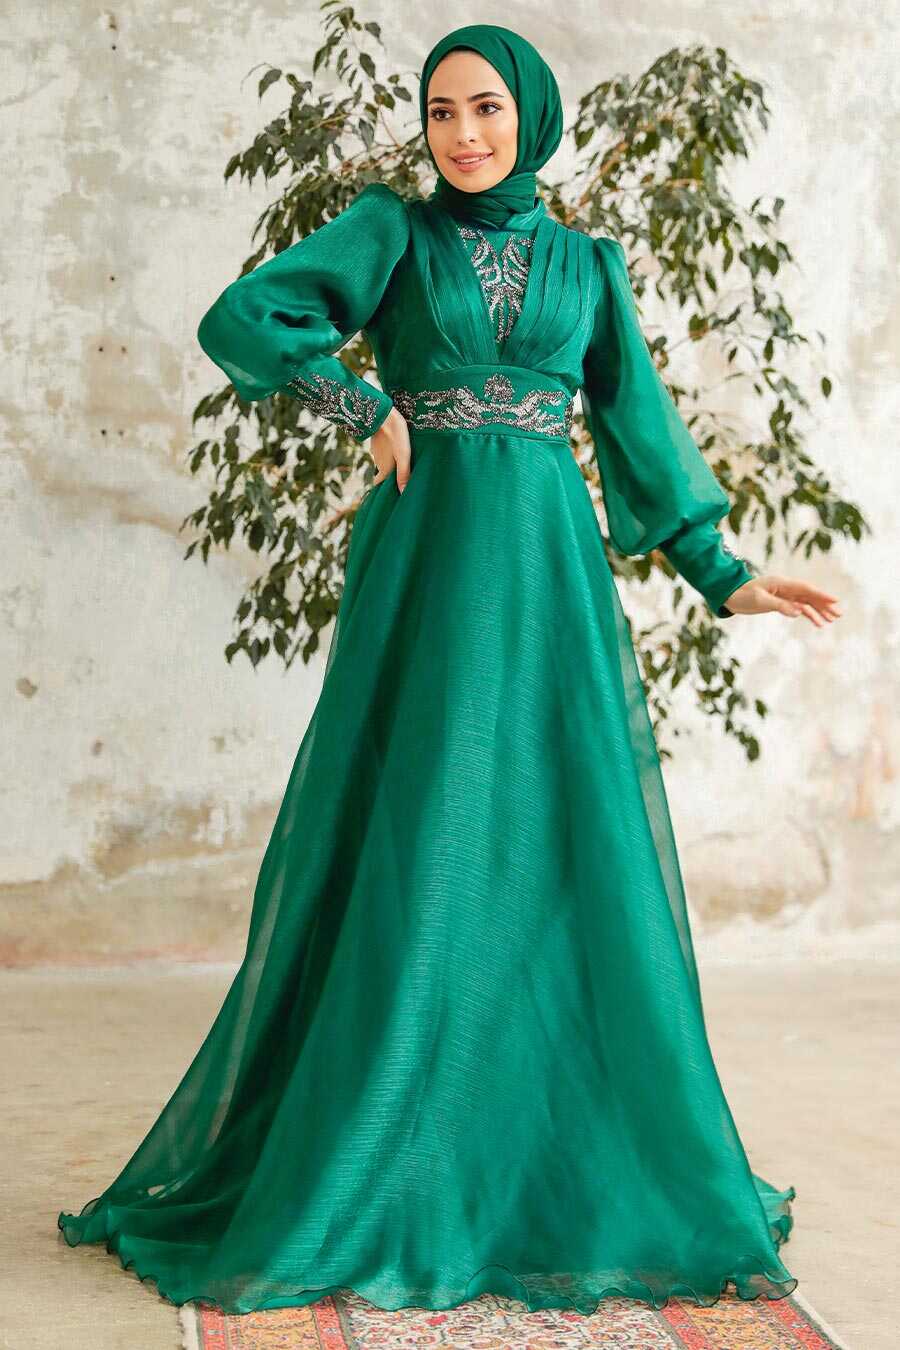 Neva Style - Stylish Green Modest Islamic Clothing Prom Dress 3753Y